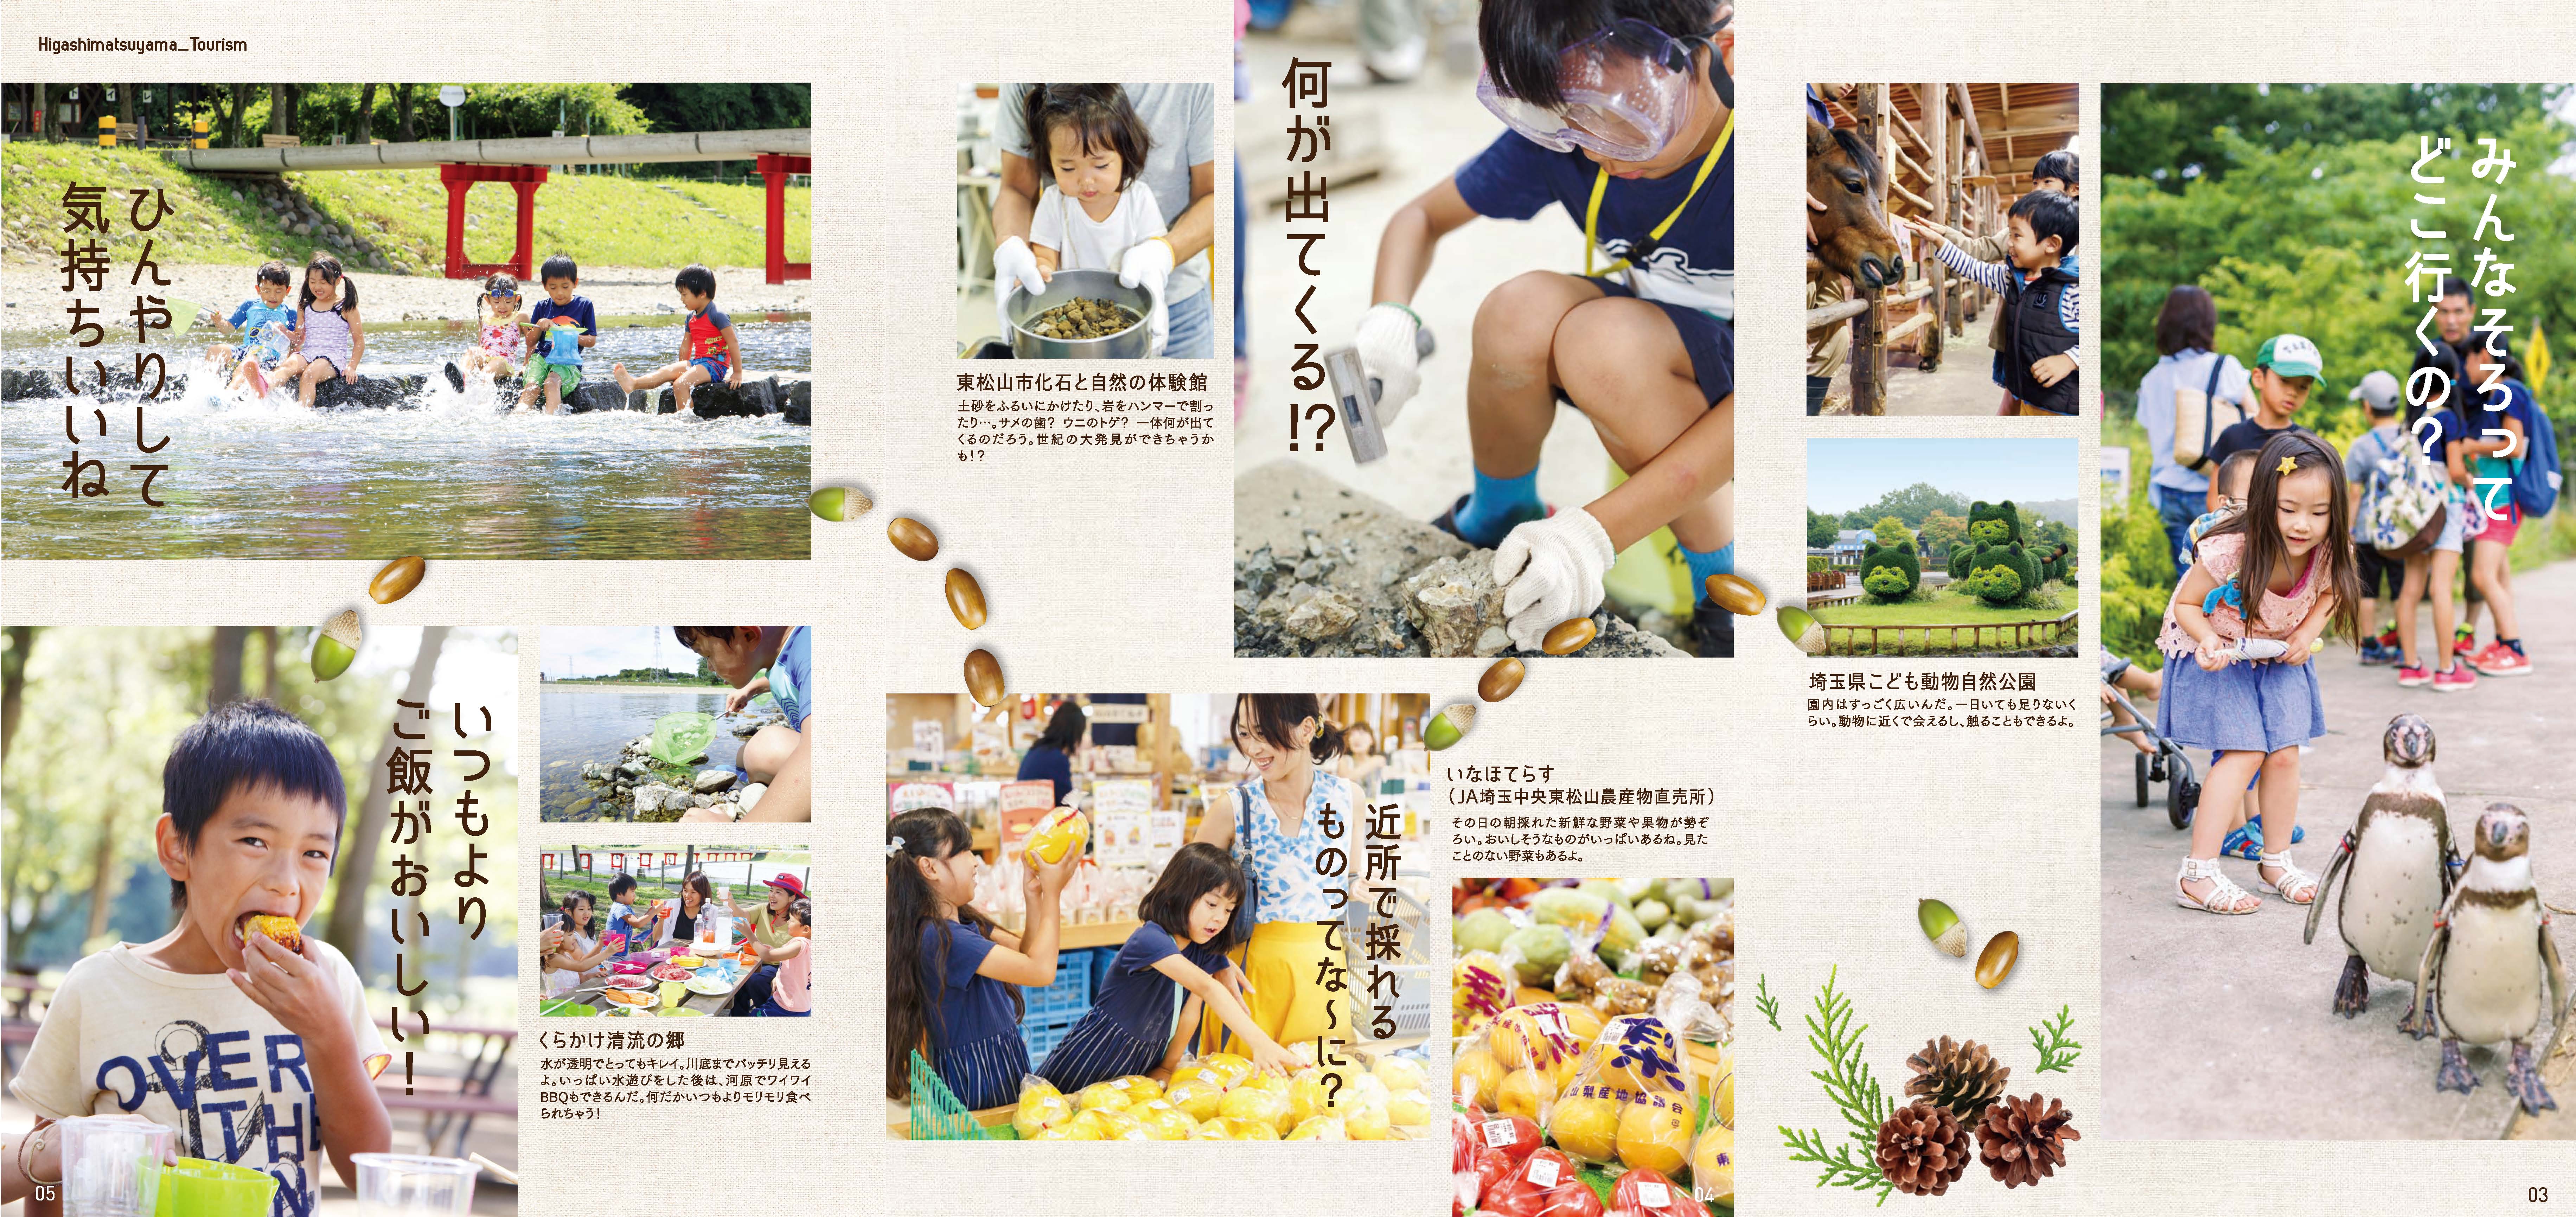 【東松山市】魅力体験モニターツアー定員８家族に対し、約300家族の応募。 参加者写真や生コメントを活用した冊子が話題に